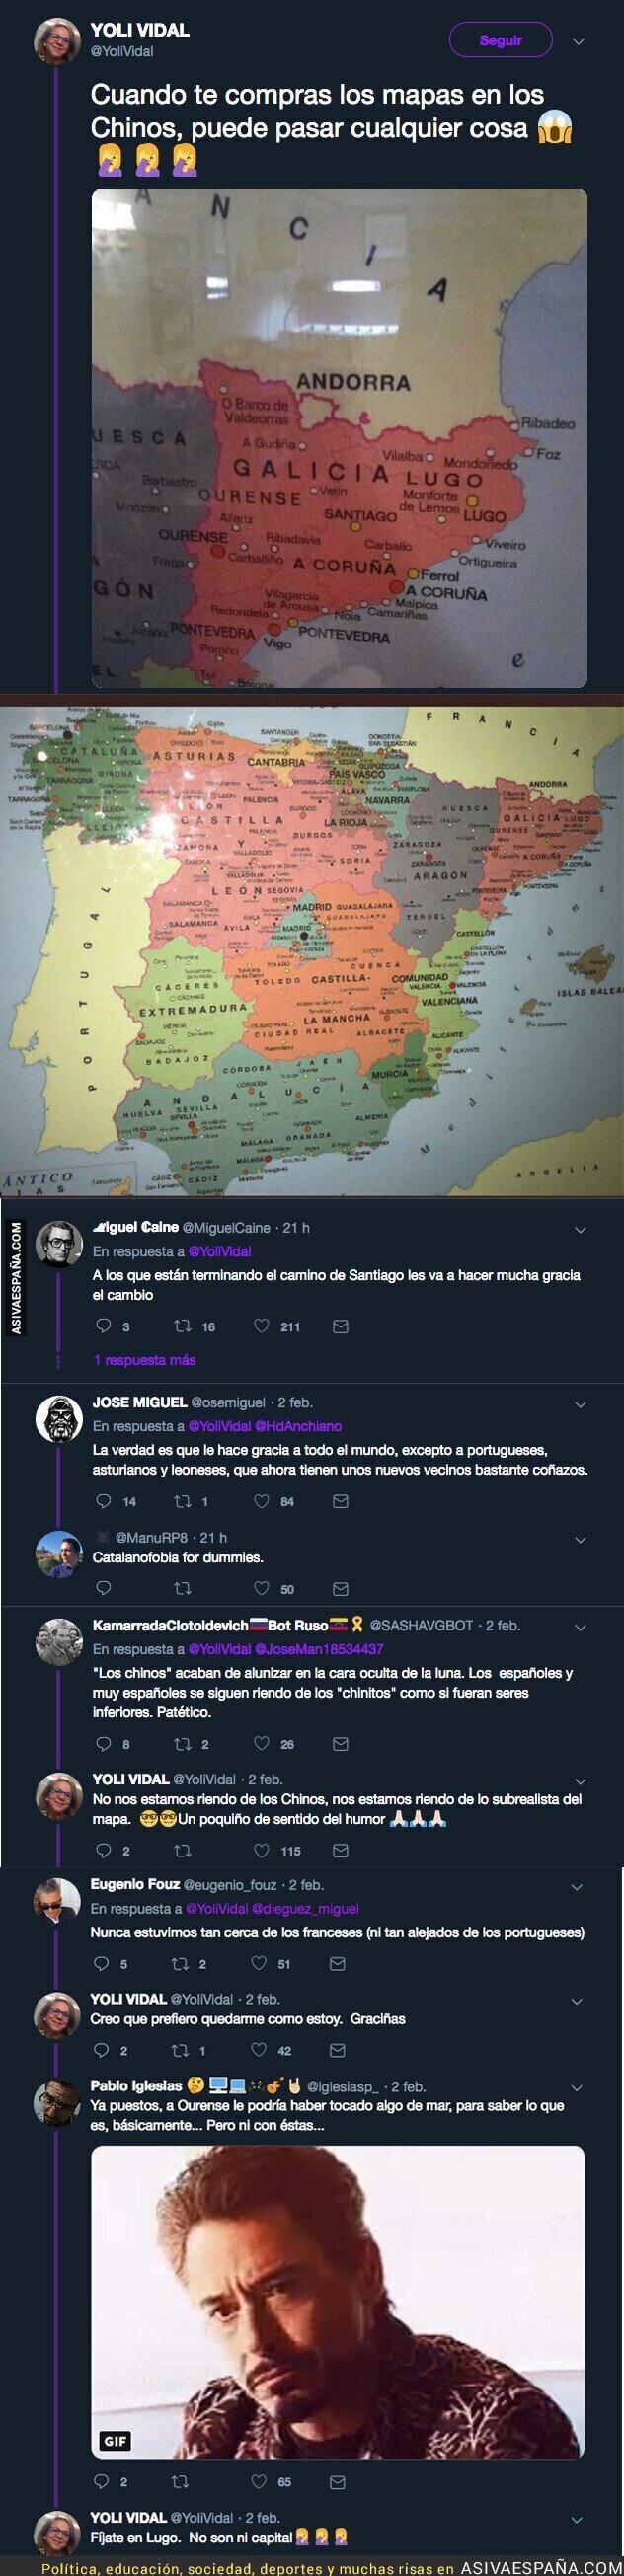 El mapa que se ha comprado esta mujer y que se ha hecho viral por situar a Galicia en Catalunya